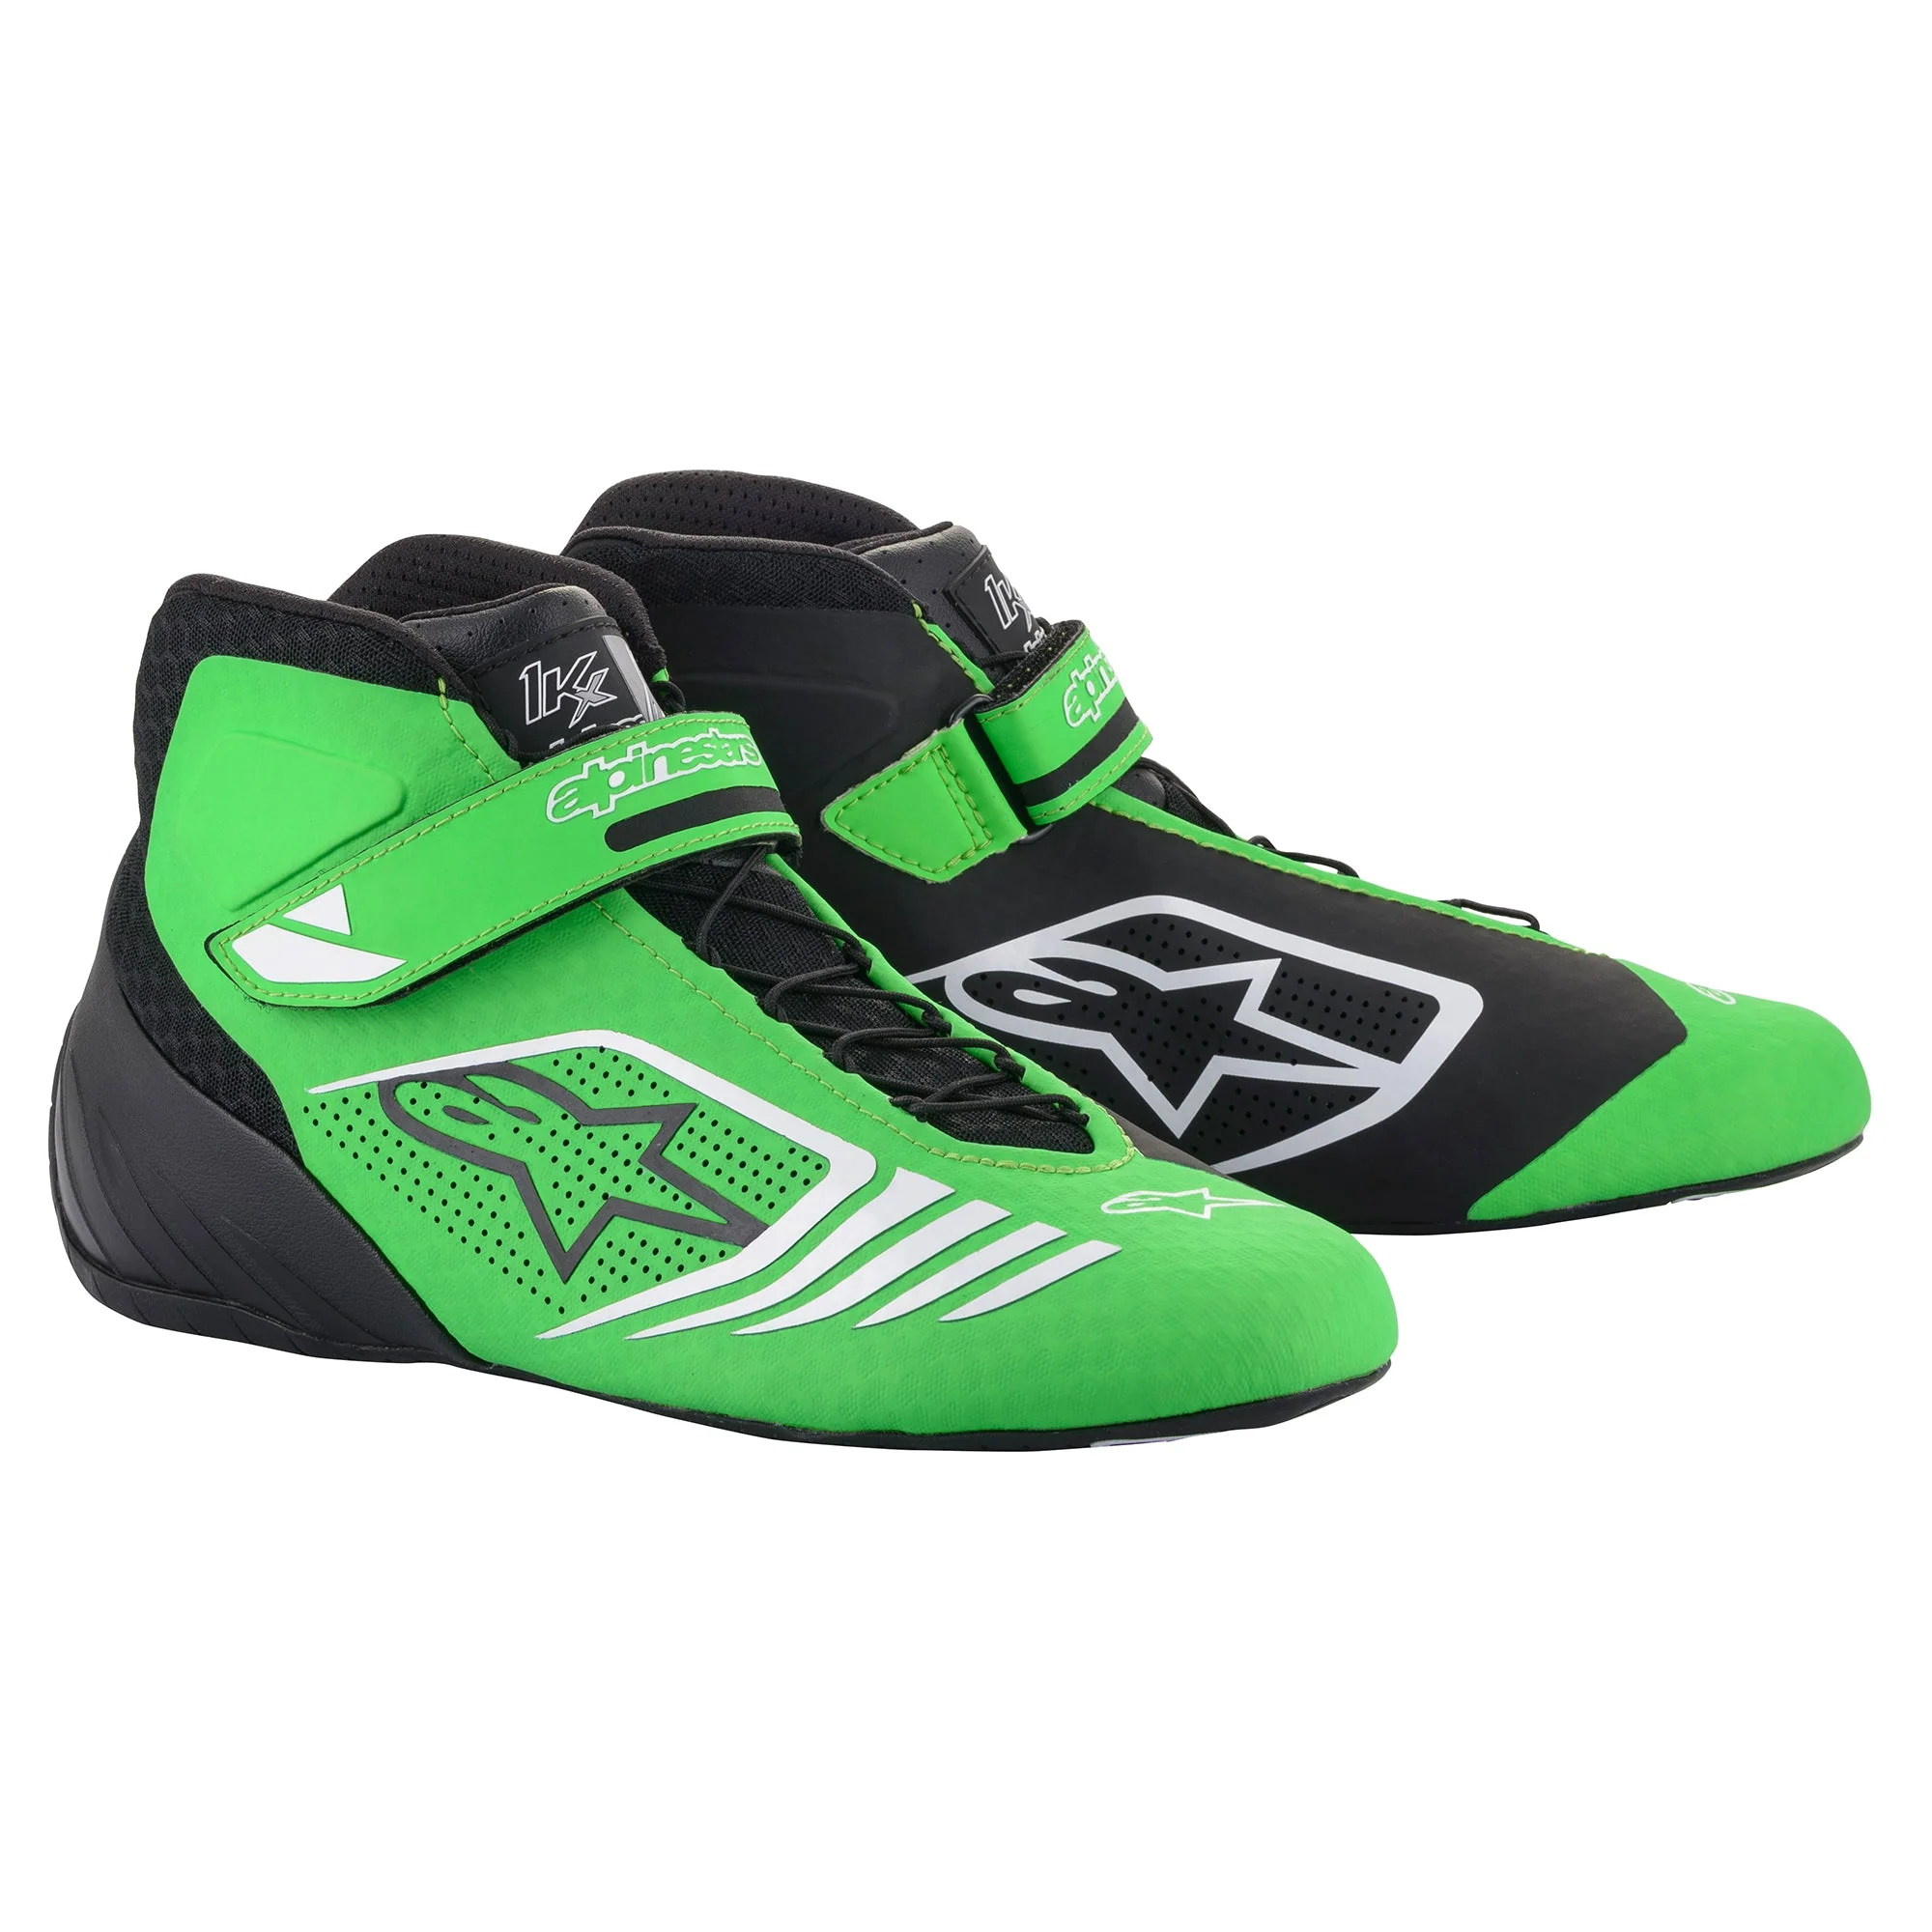 Alpinestars TECH-1 KX ботинки для картинга, черный/зеленый неоновый/белый, р-р 43(EUR)/10(US)/9(UK). DARK-STOCK.RU